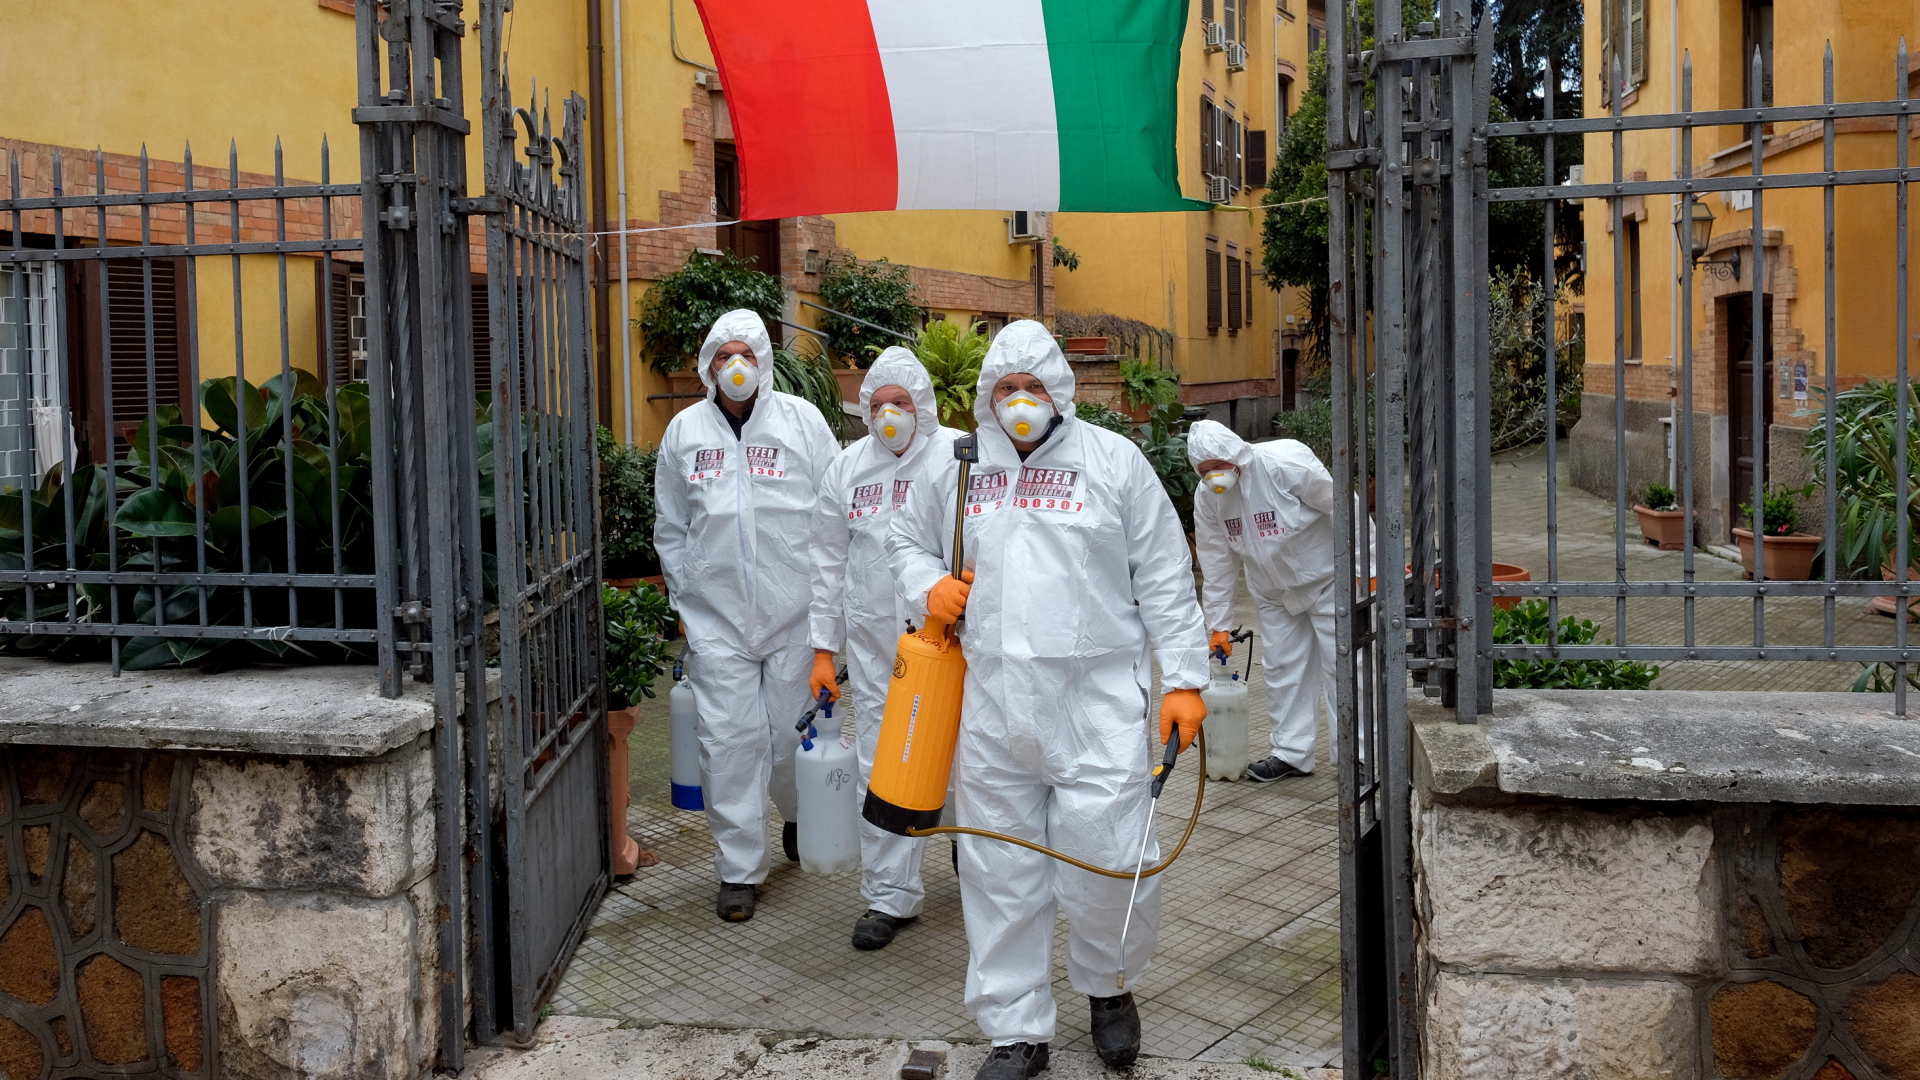 Arbeiter in Schutzkleidung desinfizieren die Gehwege in einem Viertel in Rom | Bildquelle: dpa